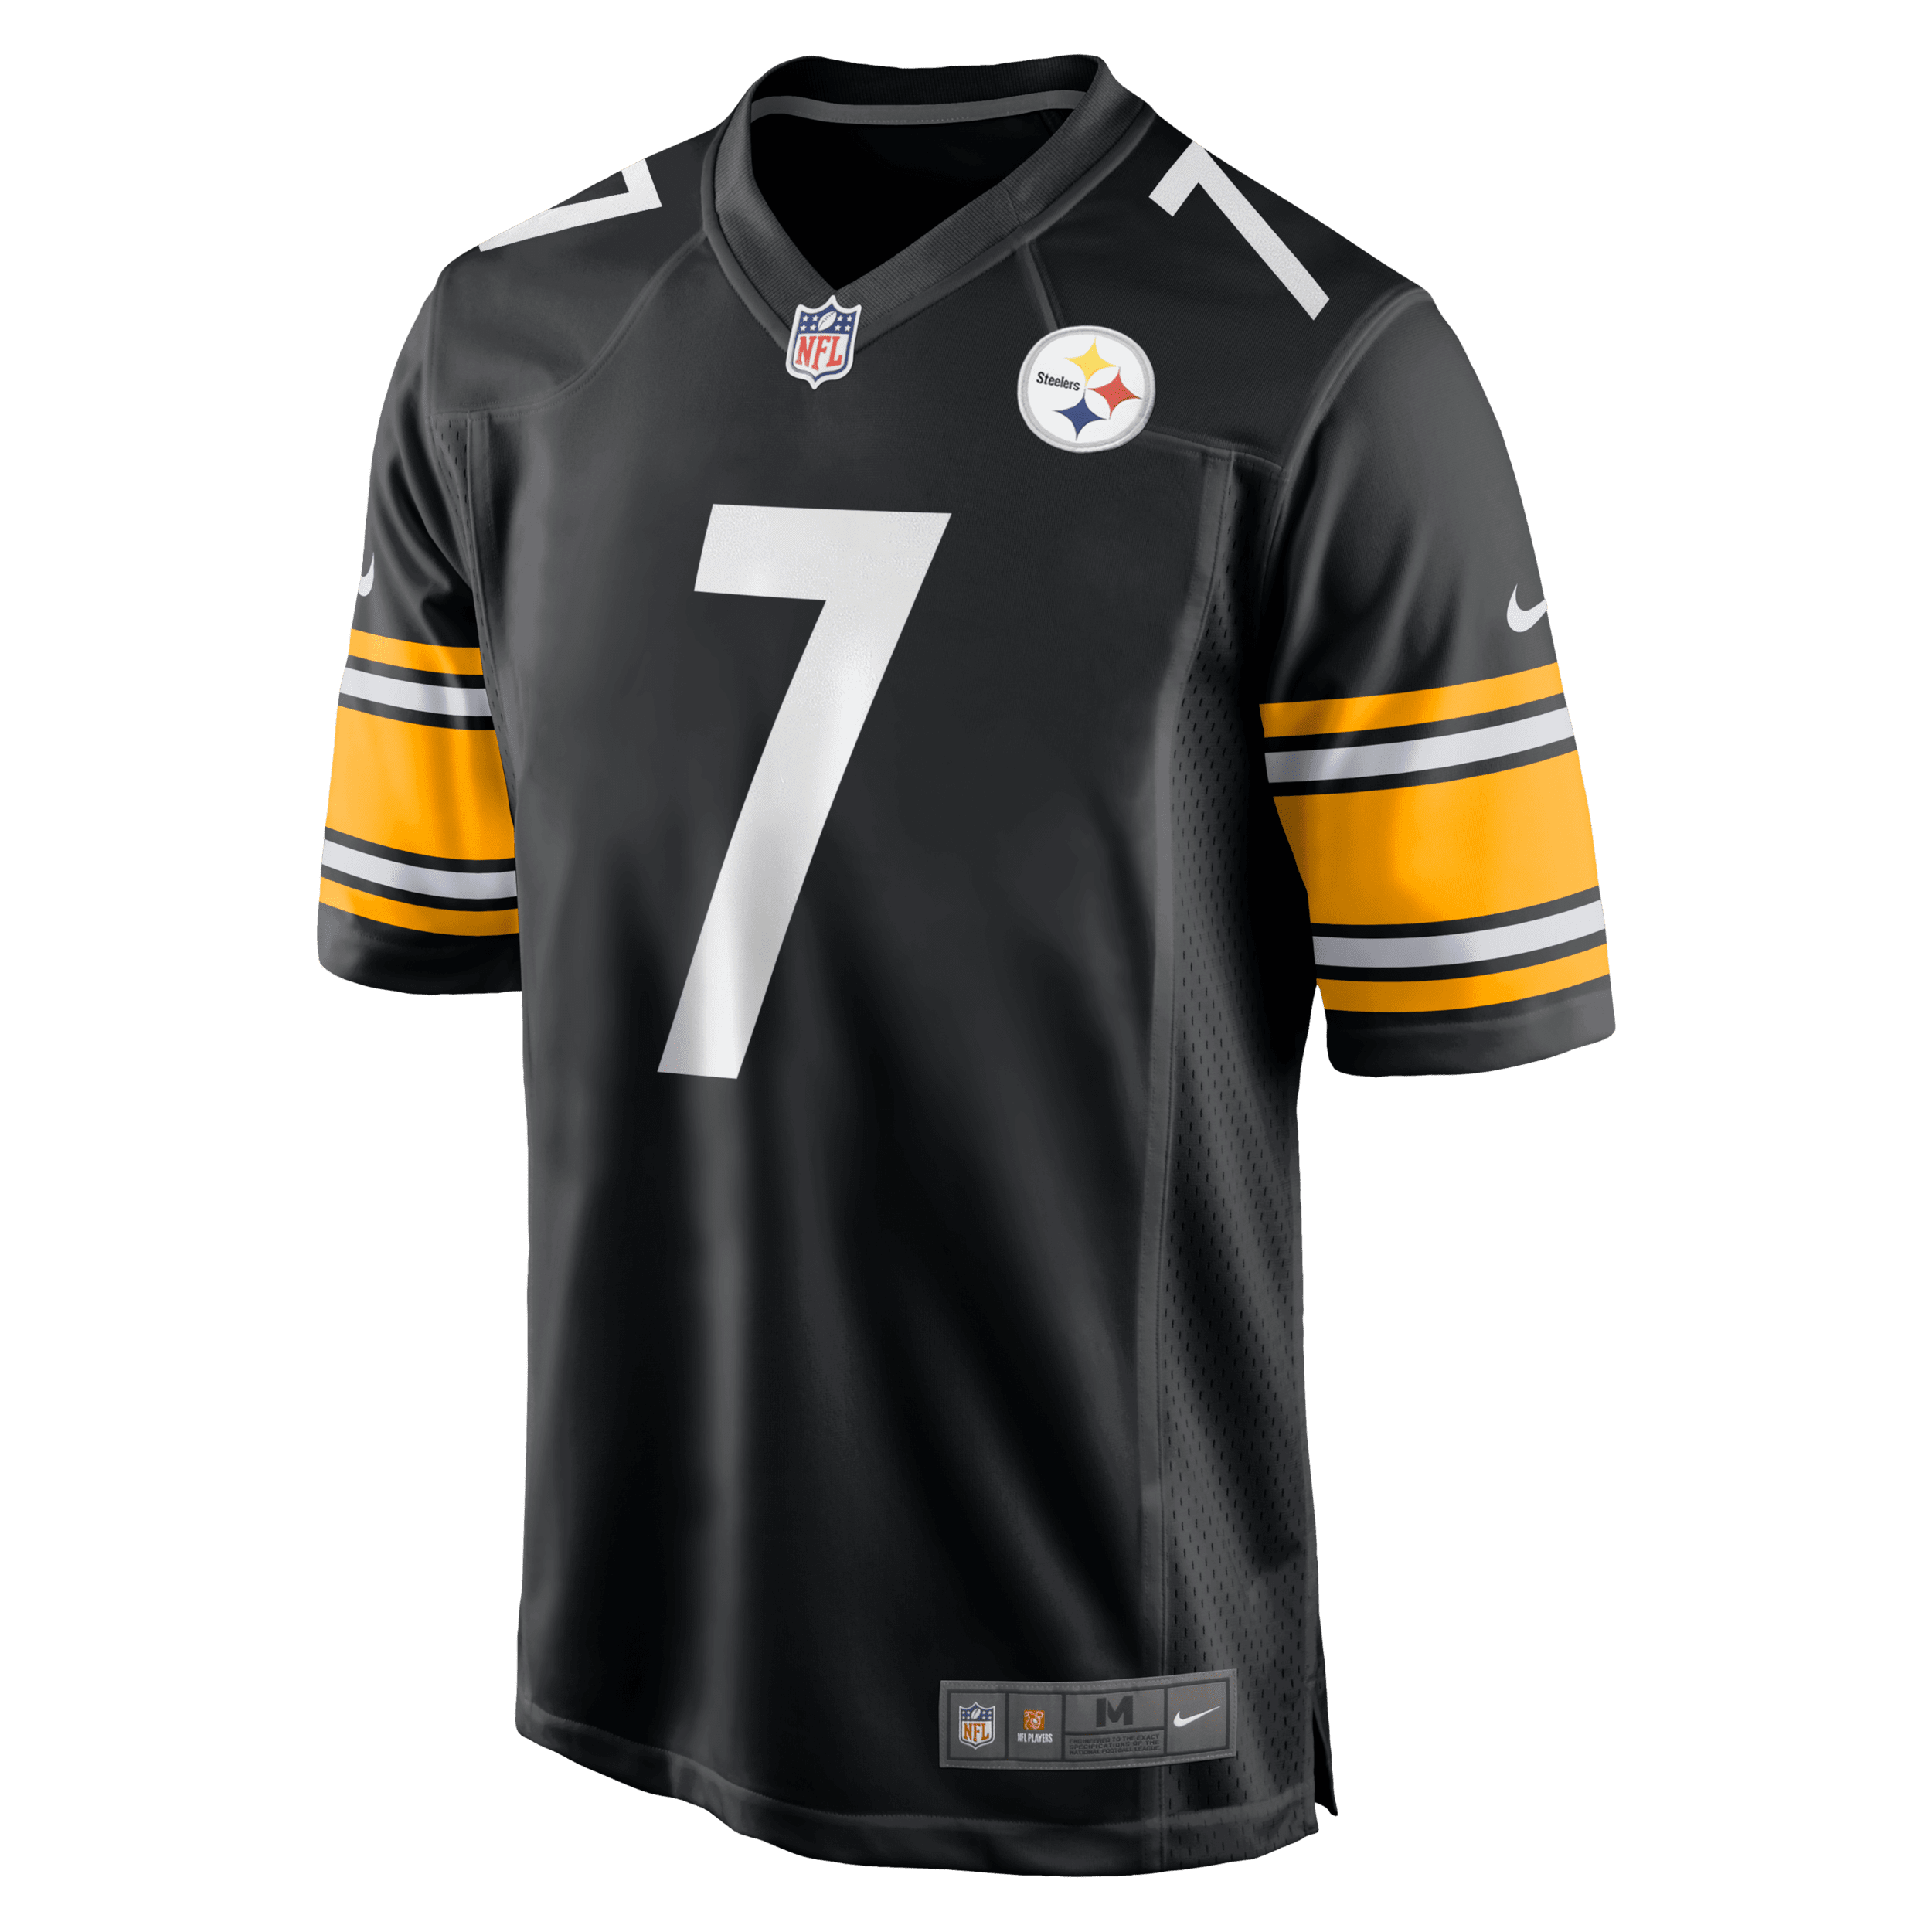 Nike NFL Pittsburgh Steelers (Ben Roethlisberger) American-football-wedstrijdjersey voor heren - Zwart